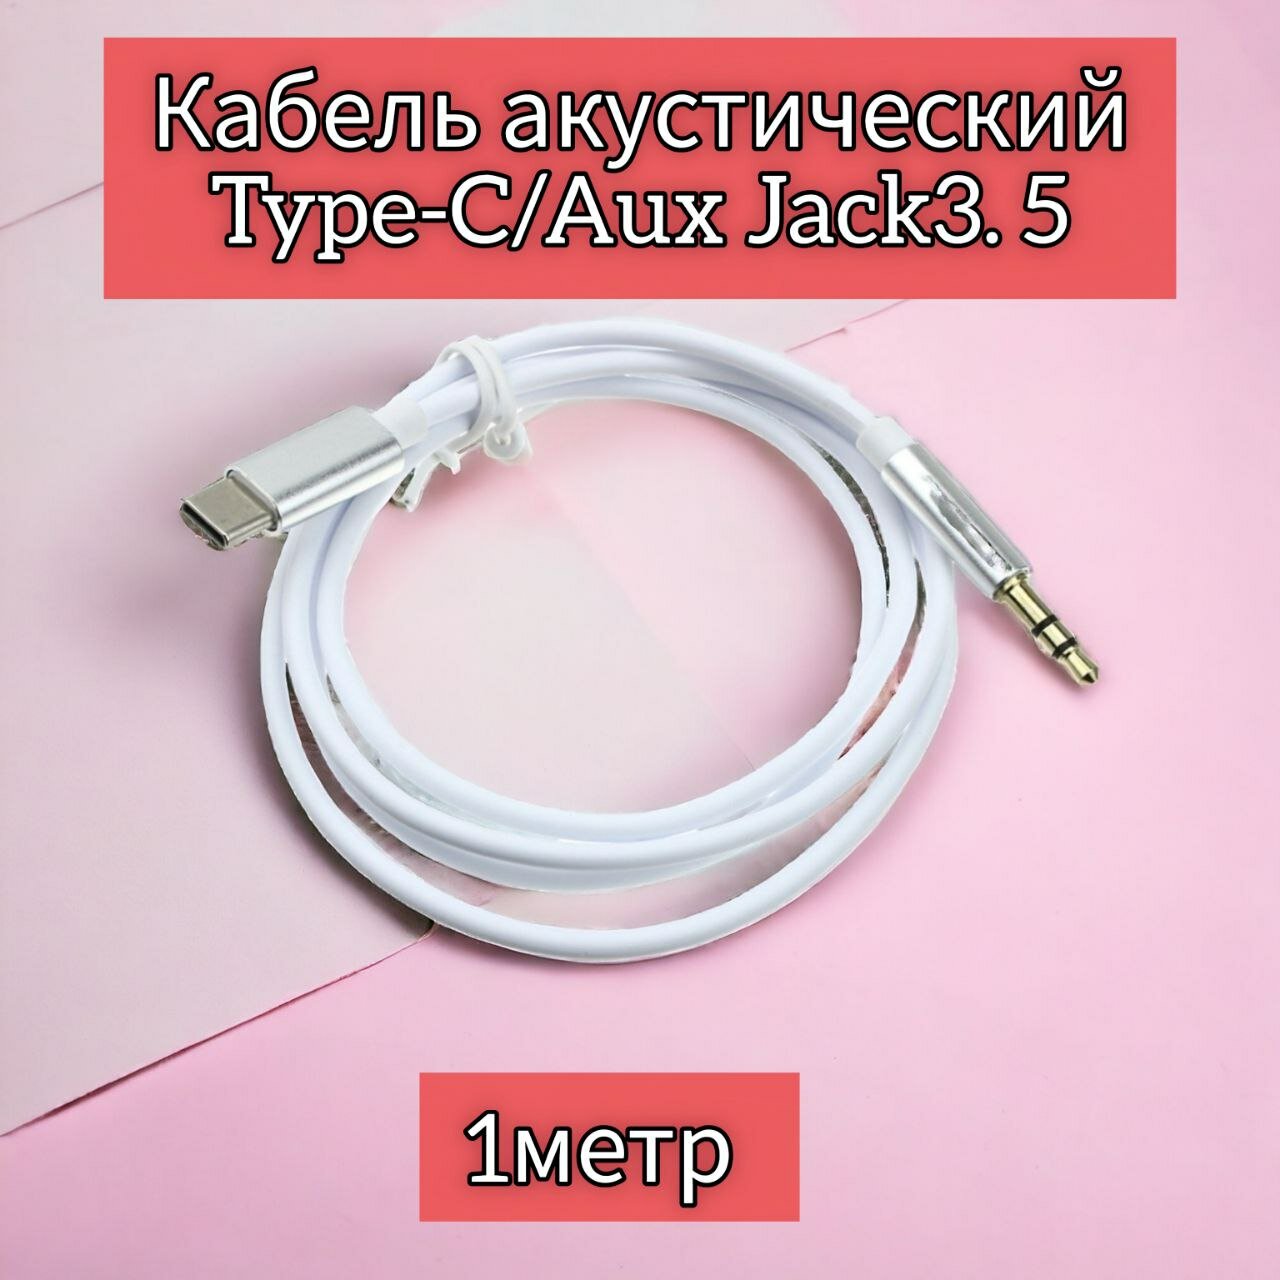 Аудио кабель TYPE-C - AUX, mini Jack, 3.5 мм, адаптер тайпси для наушников, шнур тайп си для смартфона, аудио переходник 1 м Type C, белый